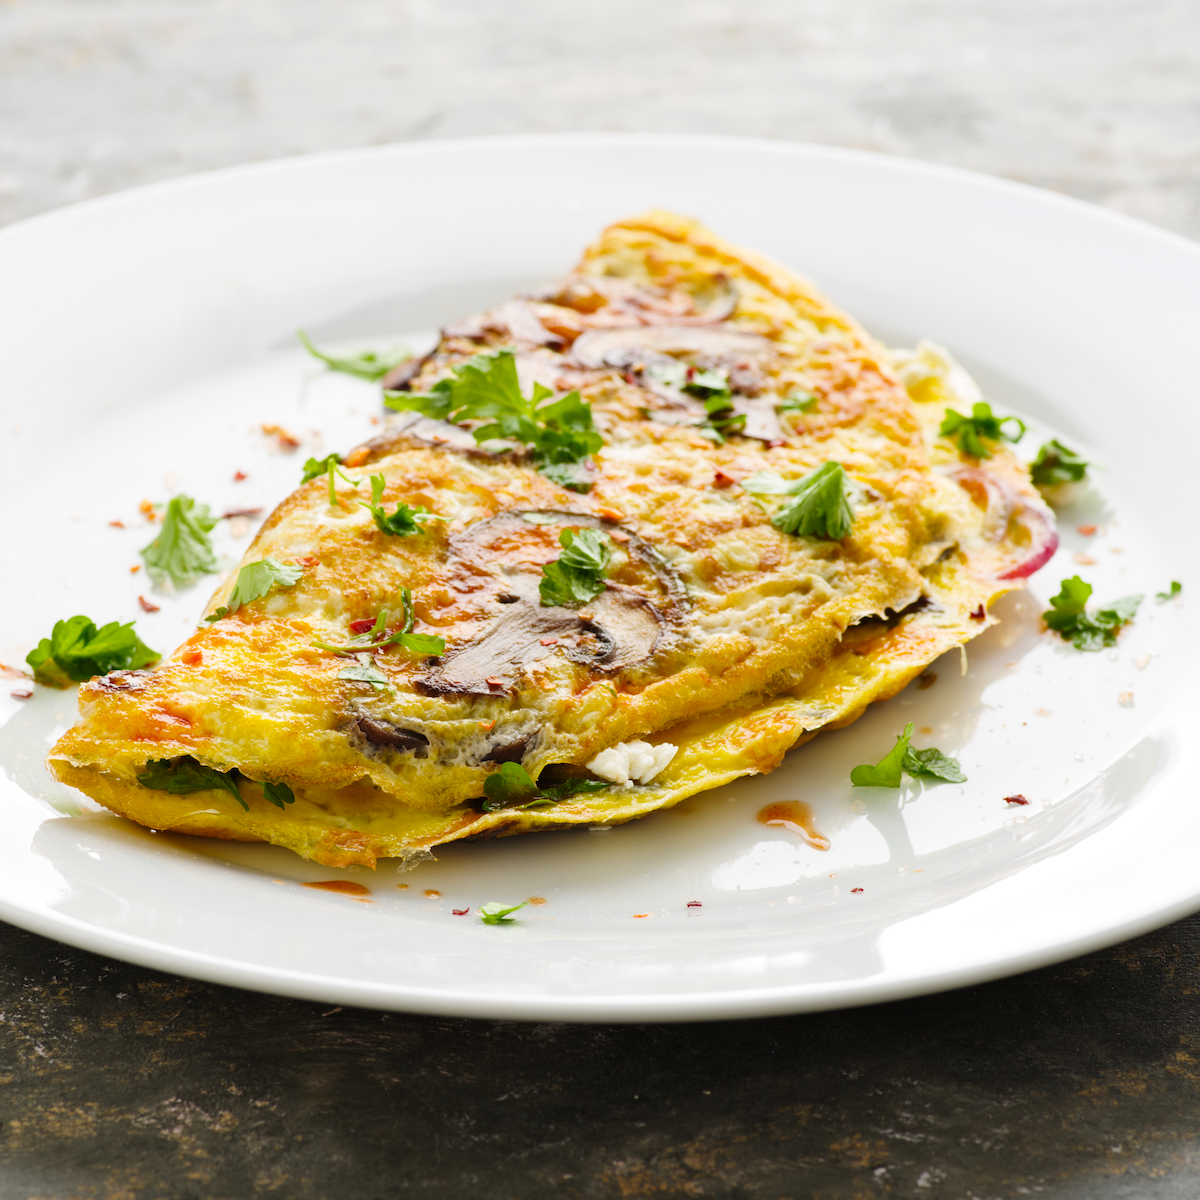 Comment faire une omelette : mes secrets pour la réussir